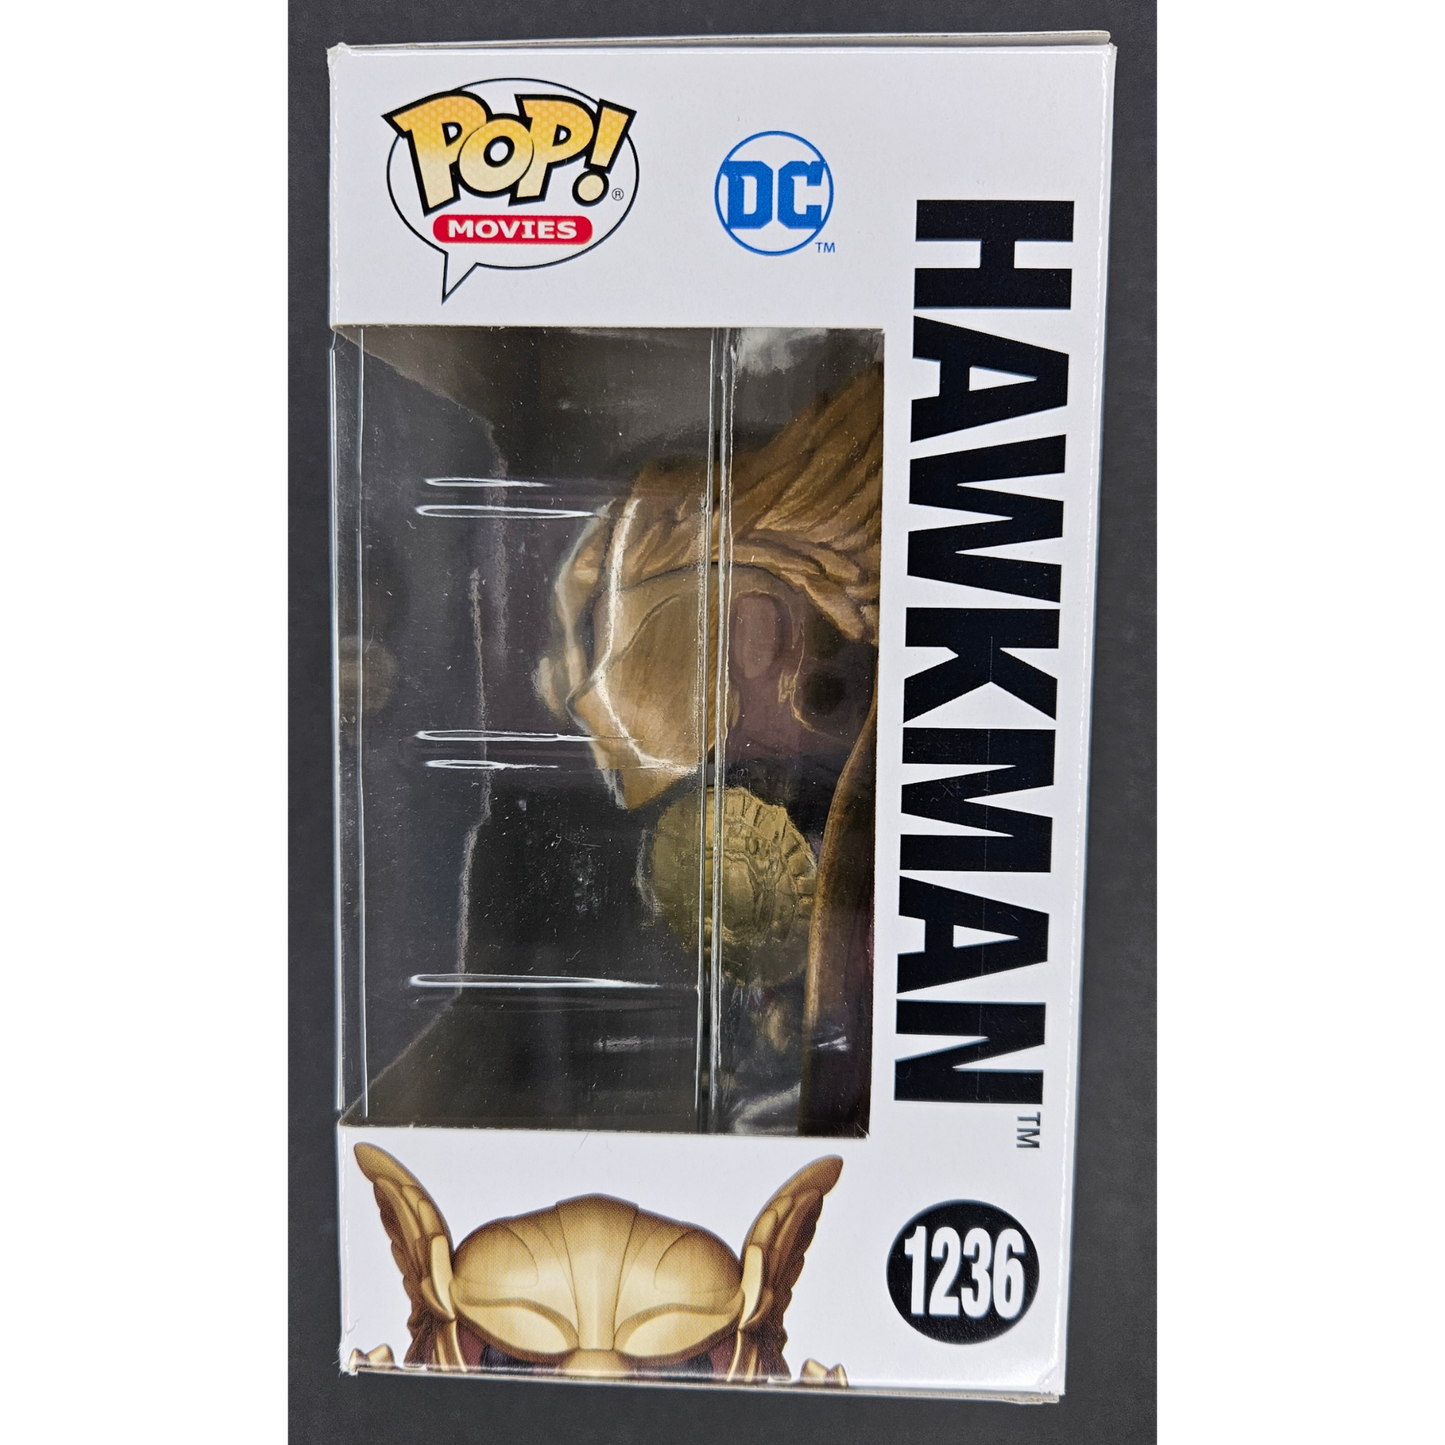 Hawkman Funko Pop! Black Adam #1236